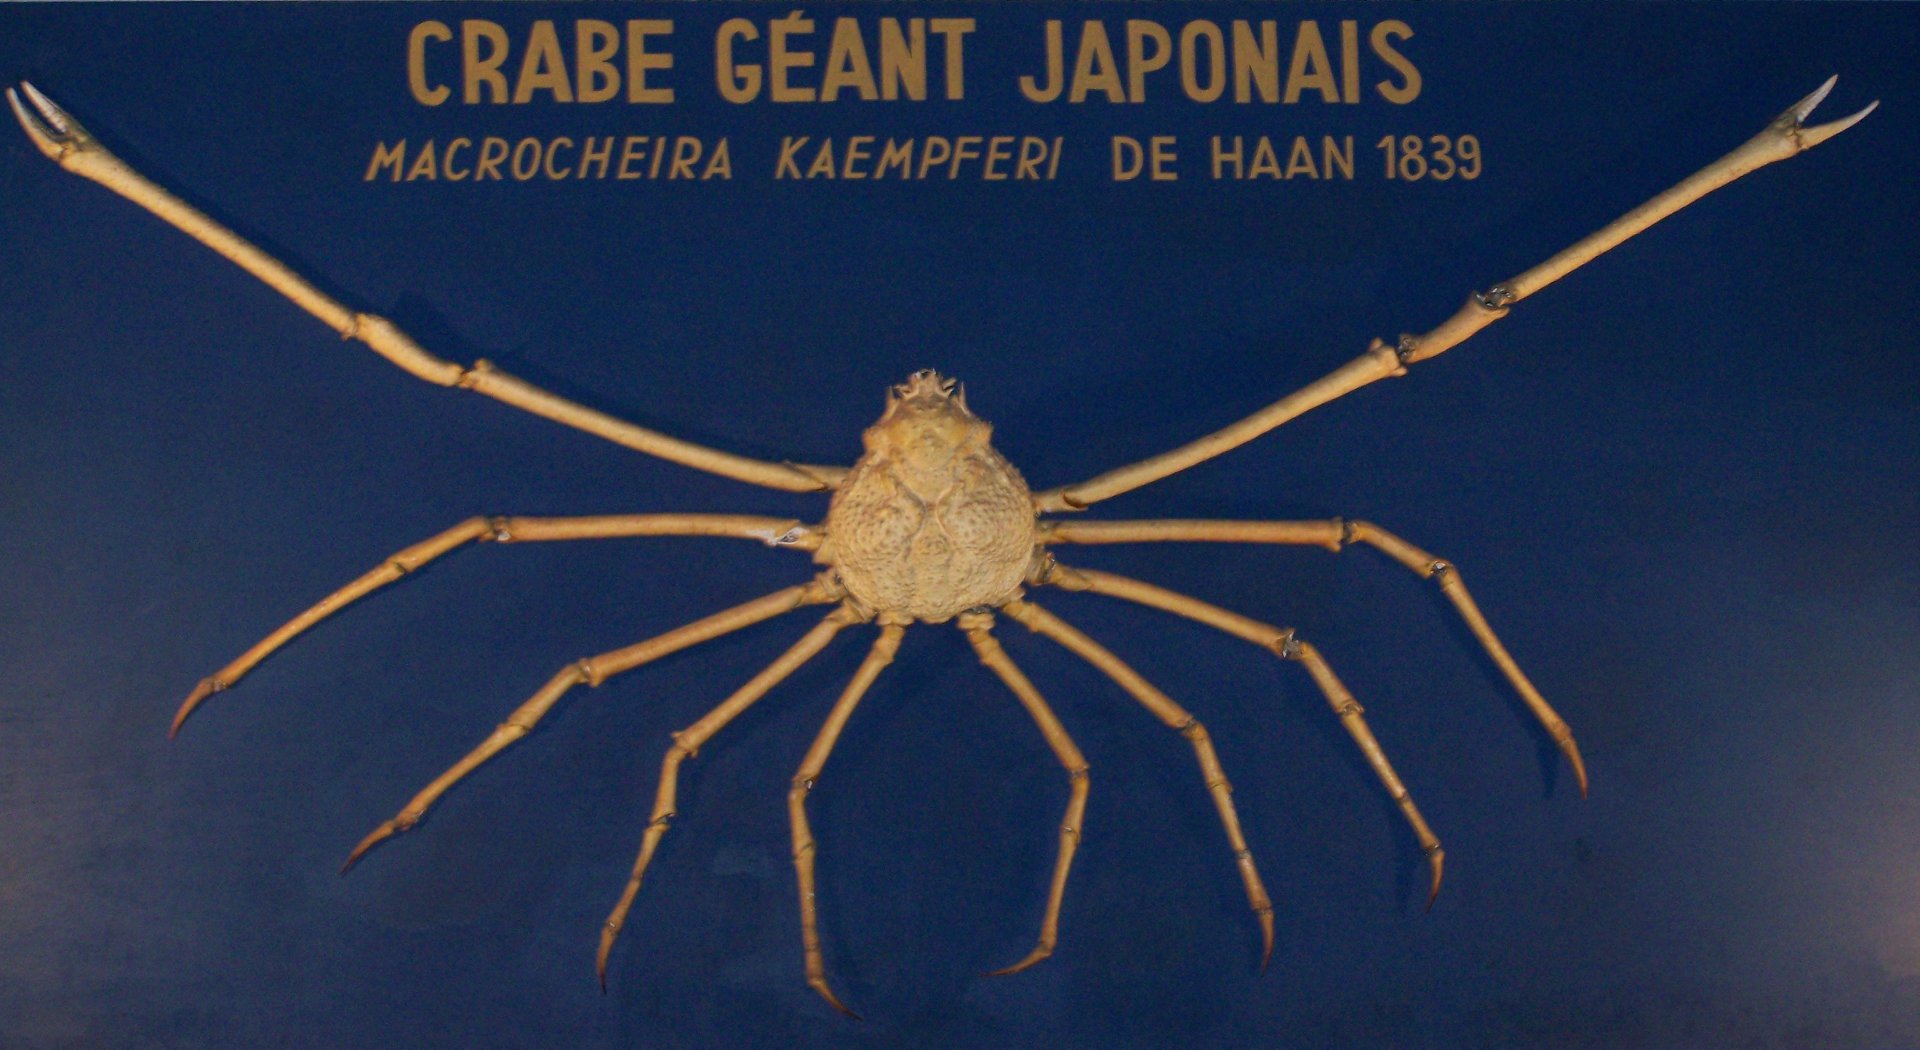 Crabe géant japonais, Macrocheira Kaempferi, colelctions du Musée de la Pêche de Concarneau